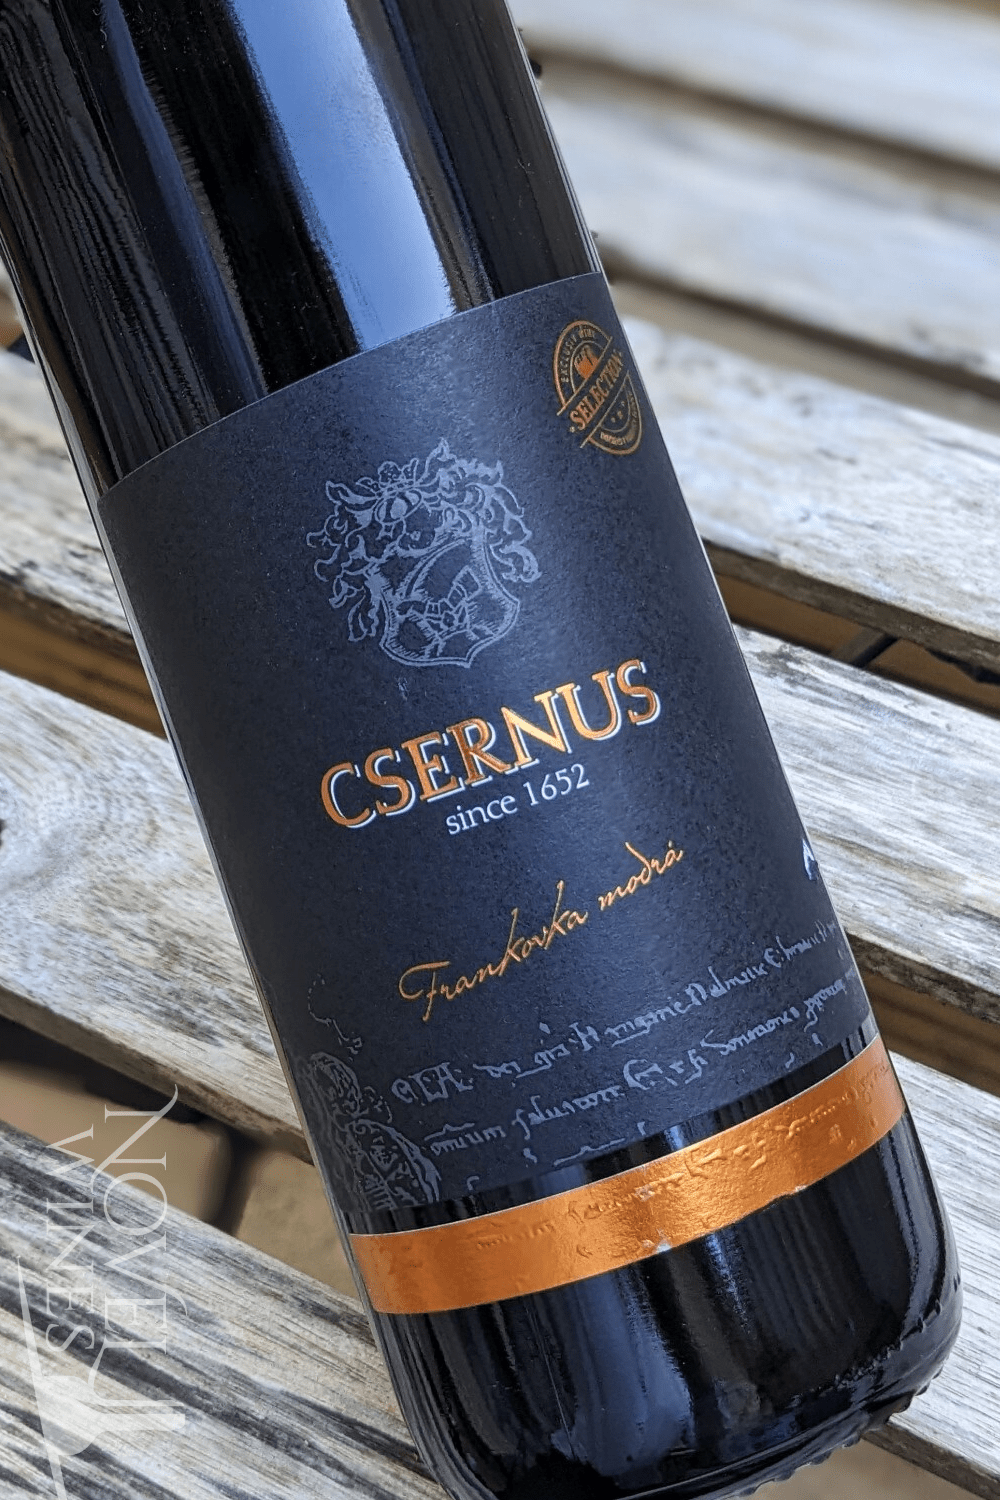 Csernus Red Wine Csernus Frankovka Modra Selection 2020, Slovakia